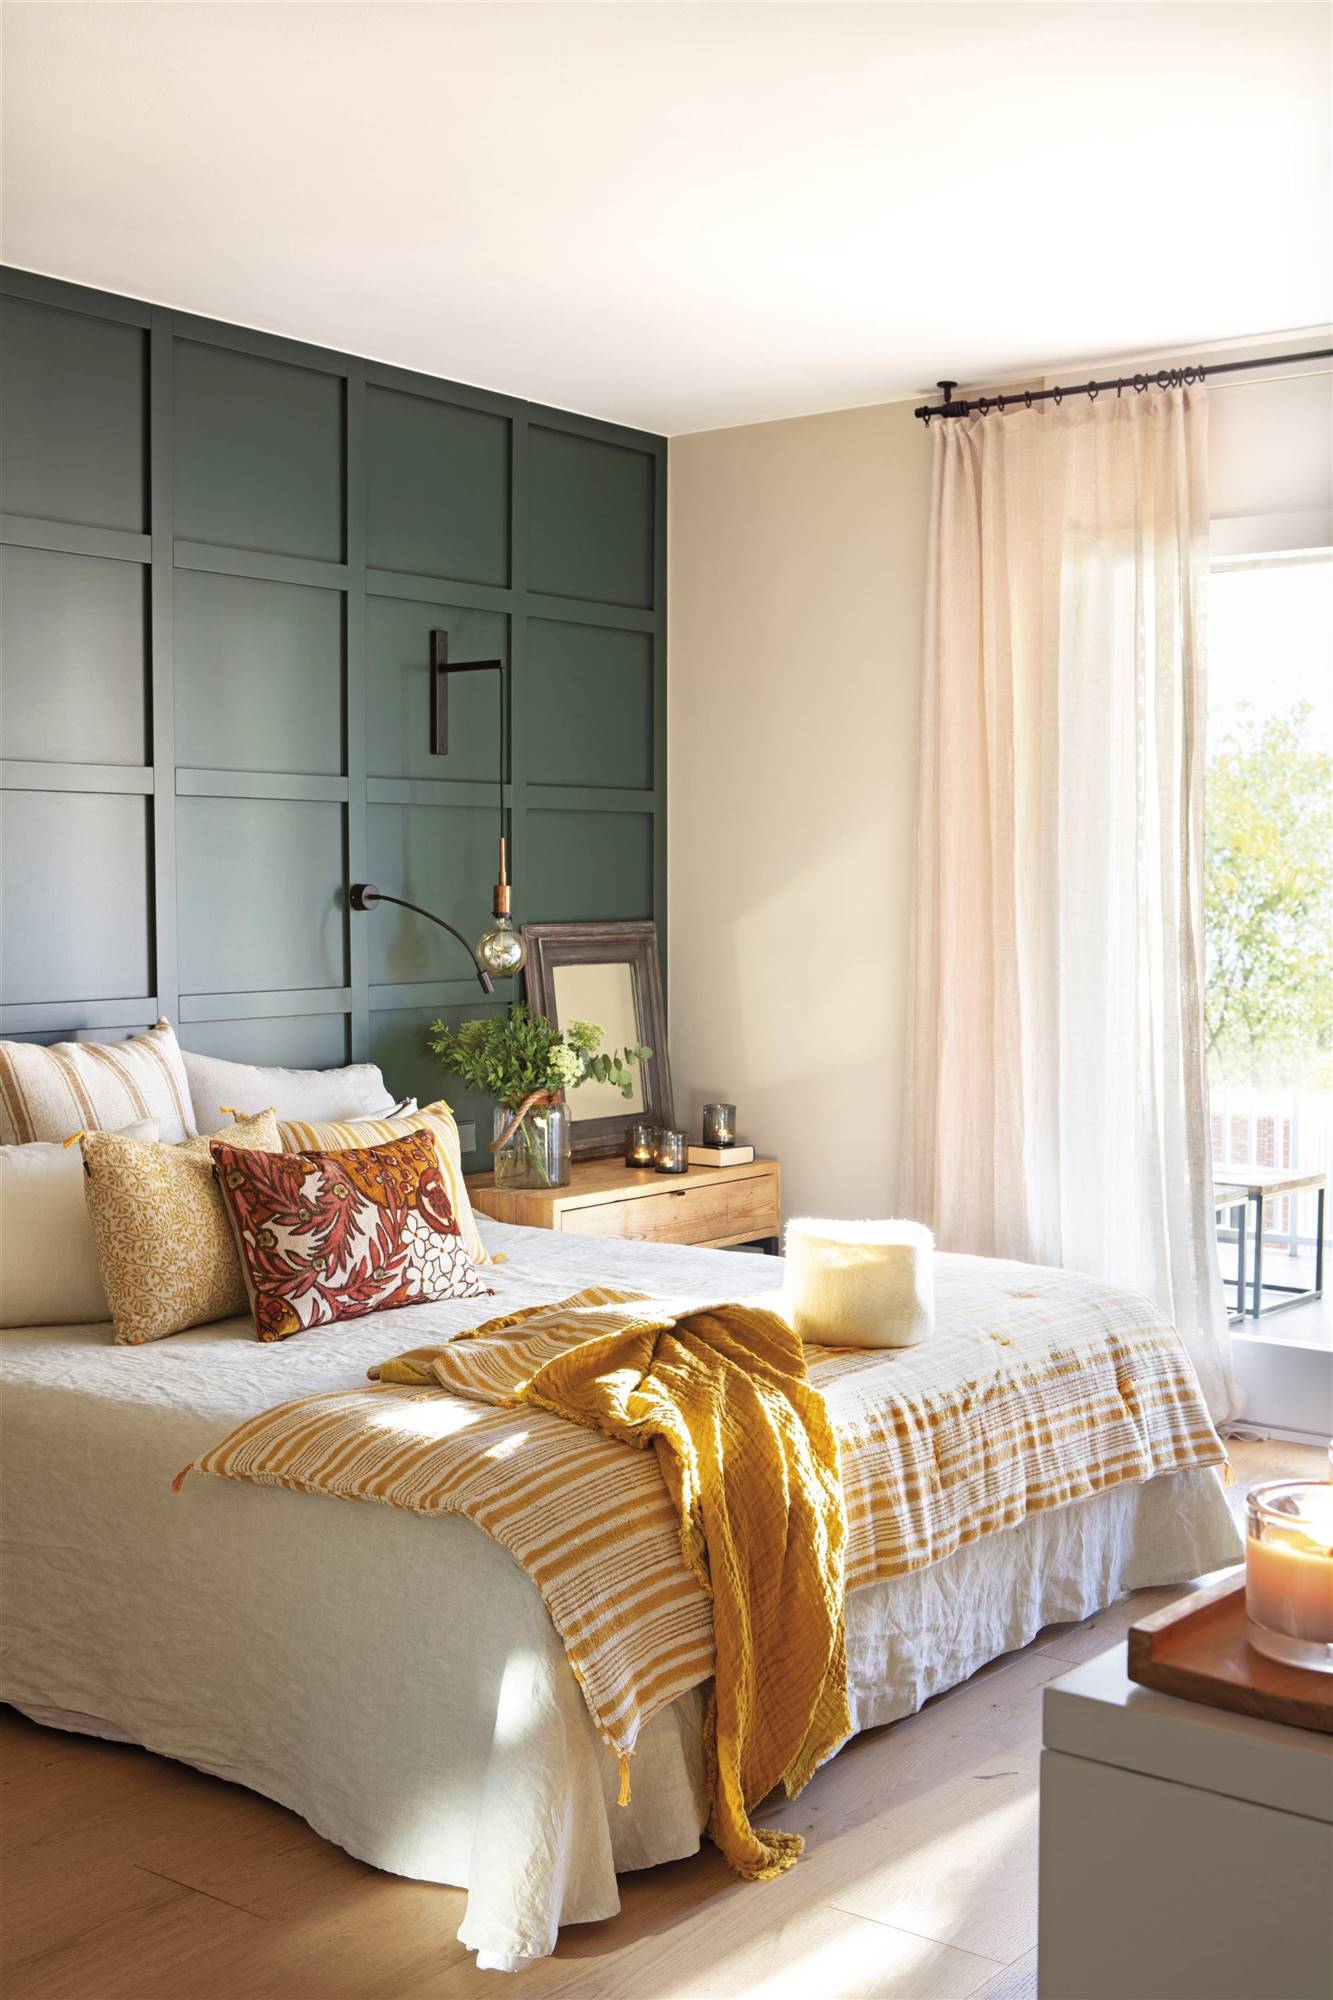 Dormitorio panelado con cuarterones de madera pintados en verde que hacen las veces de cabecero.